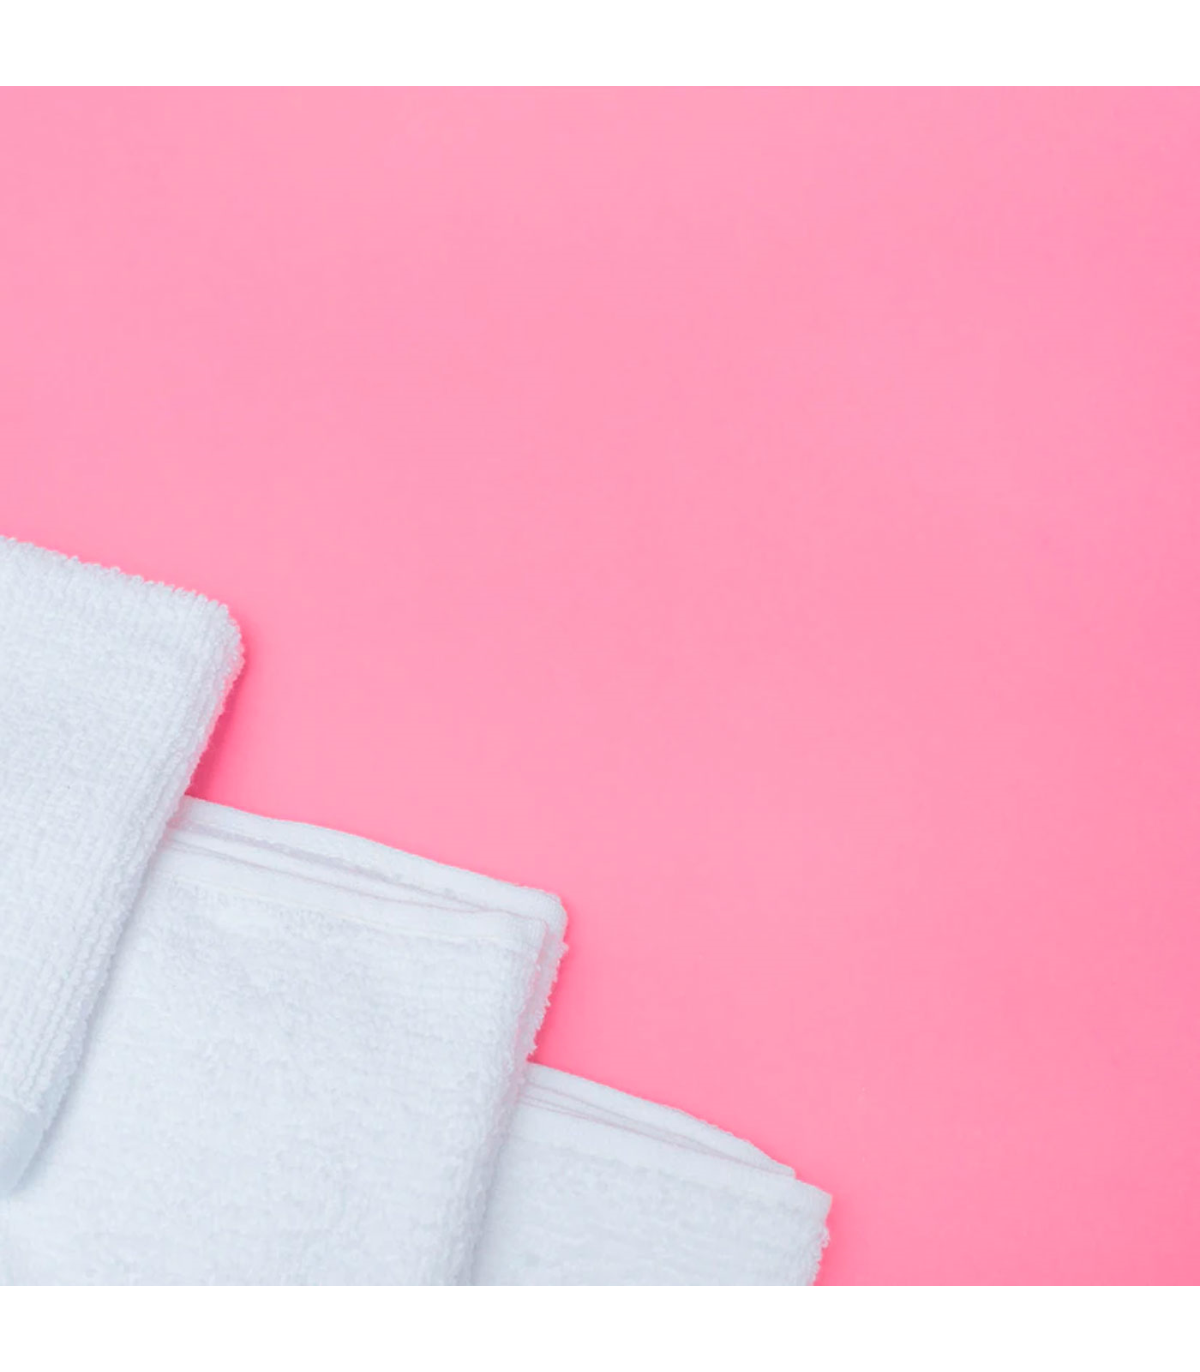 SHG - 24 toallas de mano suaves 100% algodón, colección de toallas blancas  al por mayor, toallas de baño, toallas de spa de hotel